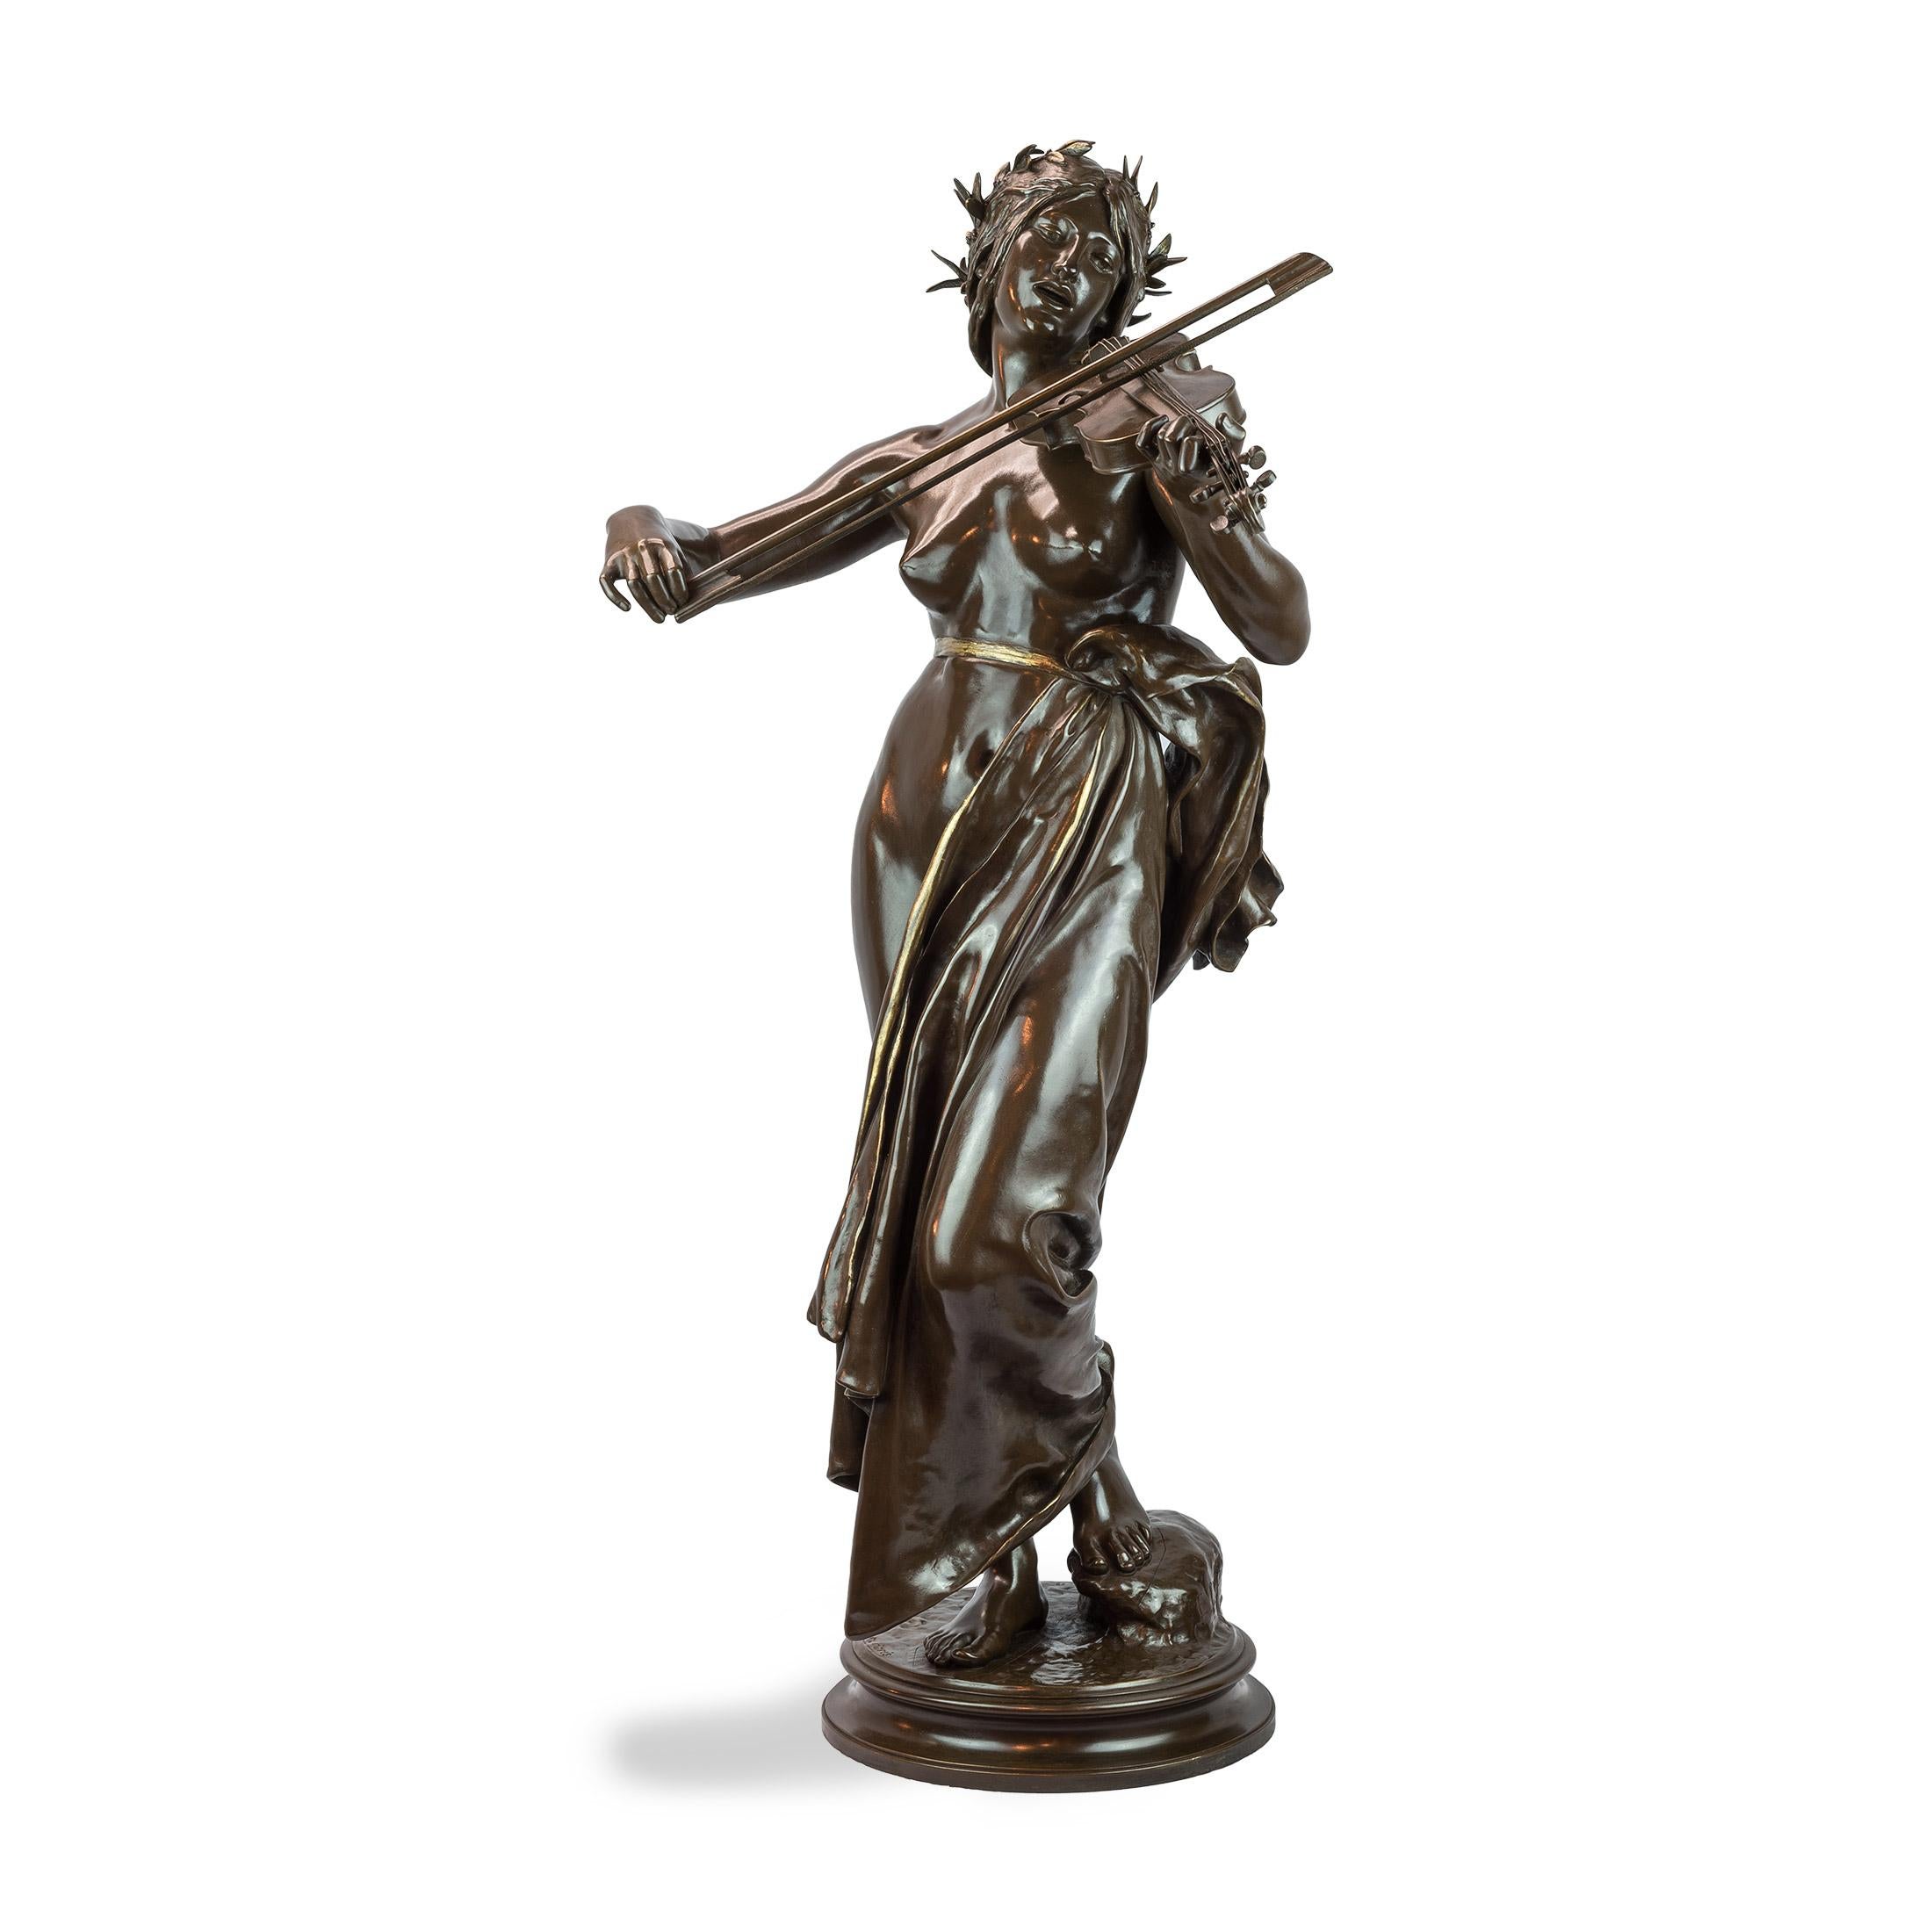 Eugène Delaplanche Figurative Sculpture - La Musique Patinated Bronze Sculpture by Delaplanche